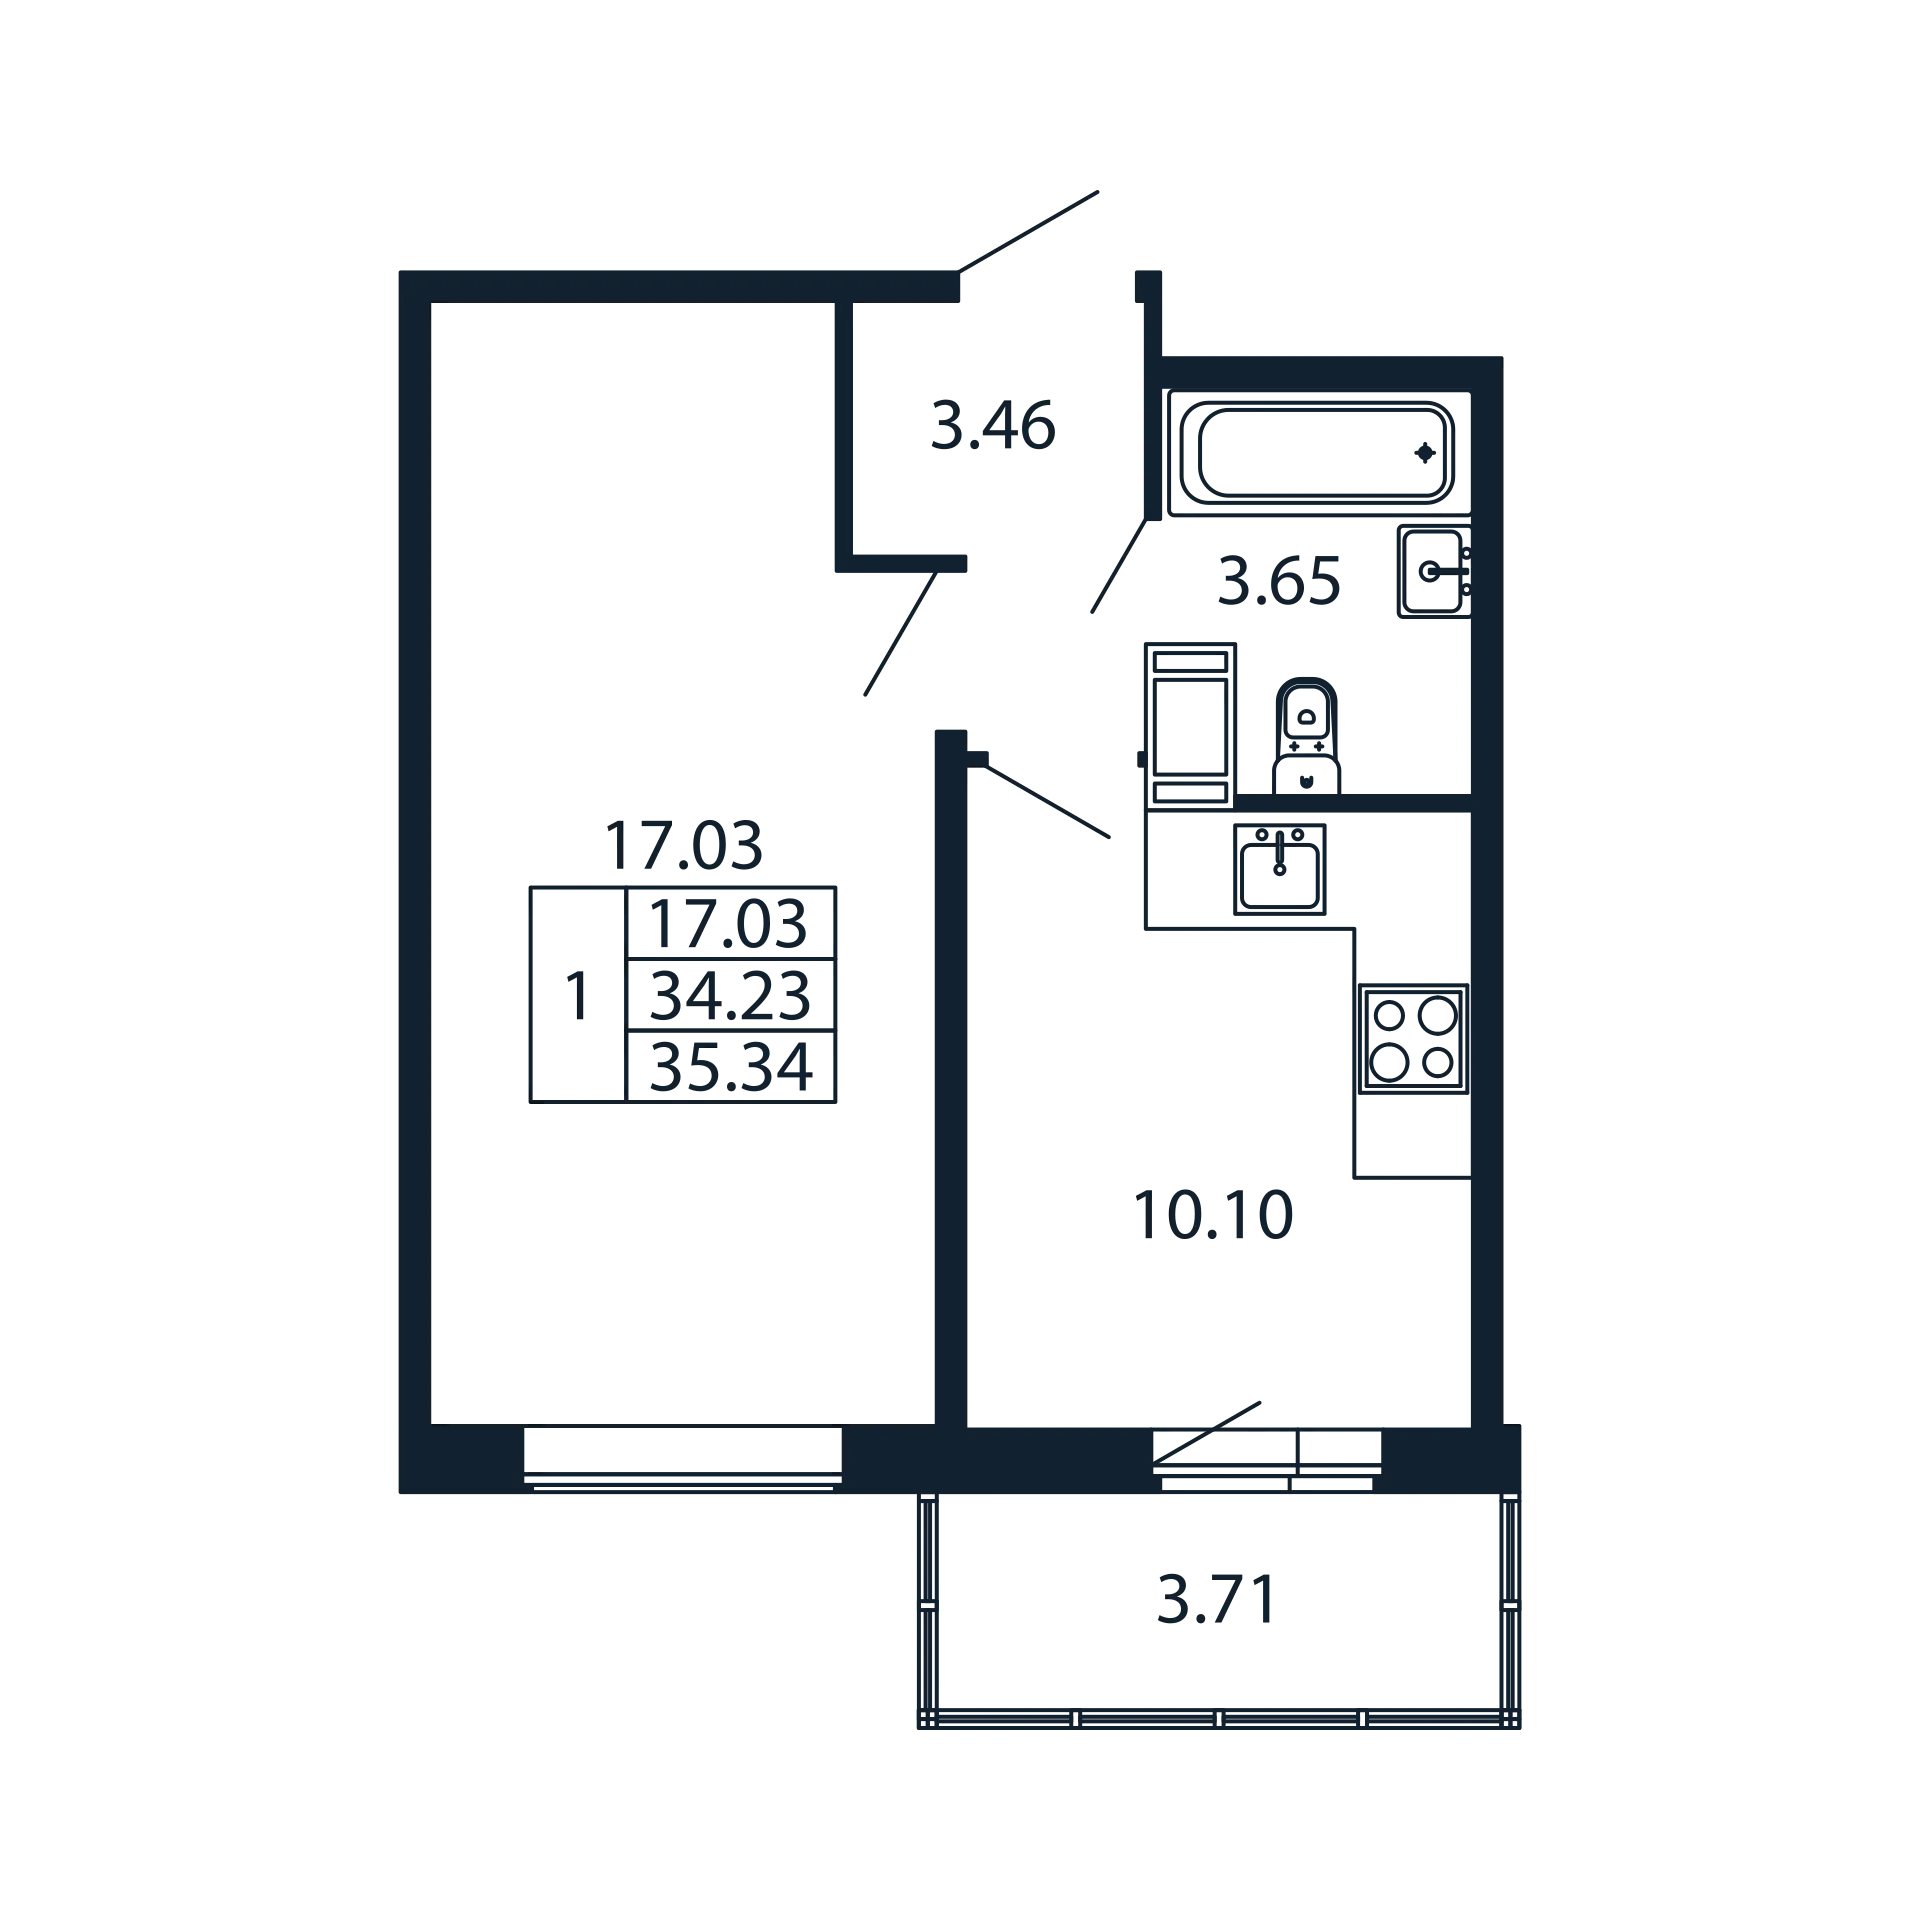 1-комнатная квартира, 34.23 м² - планировка, фото №1